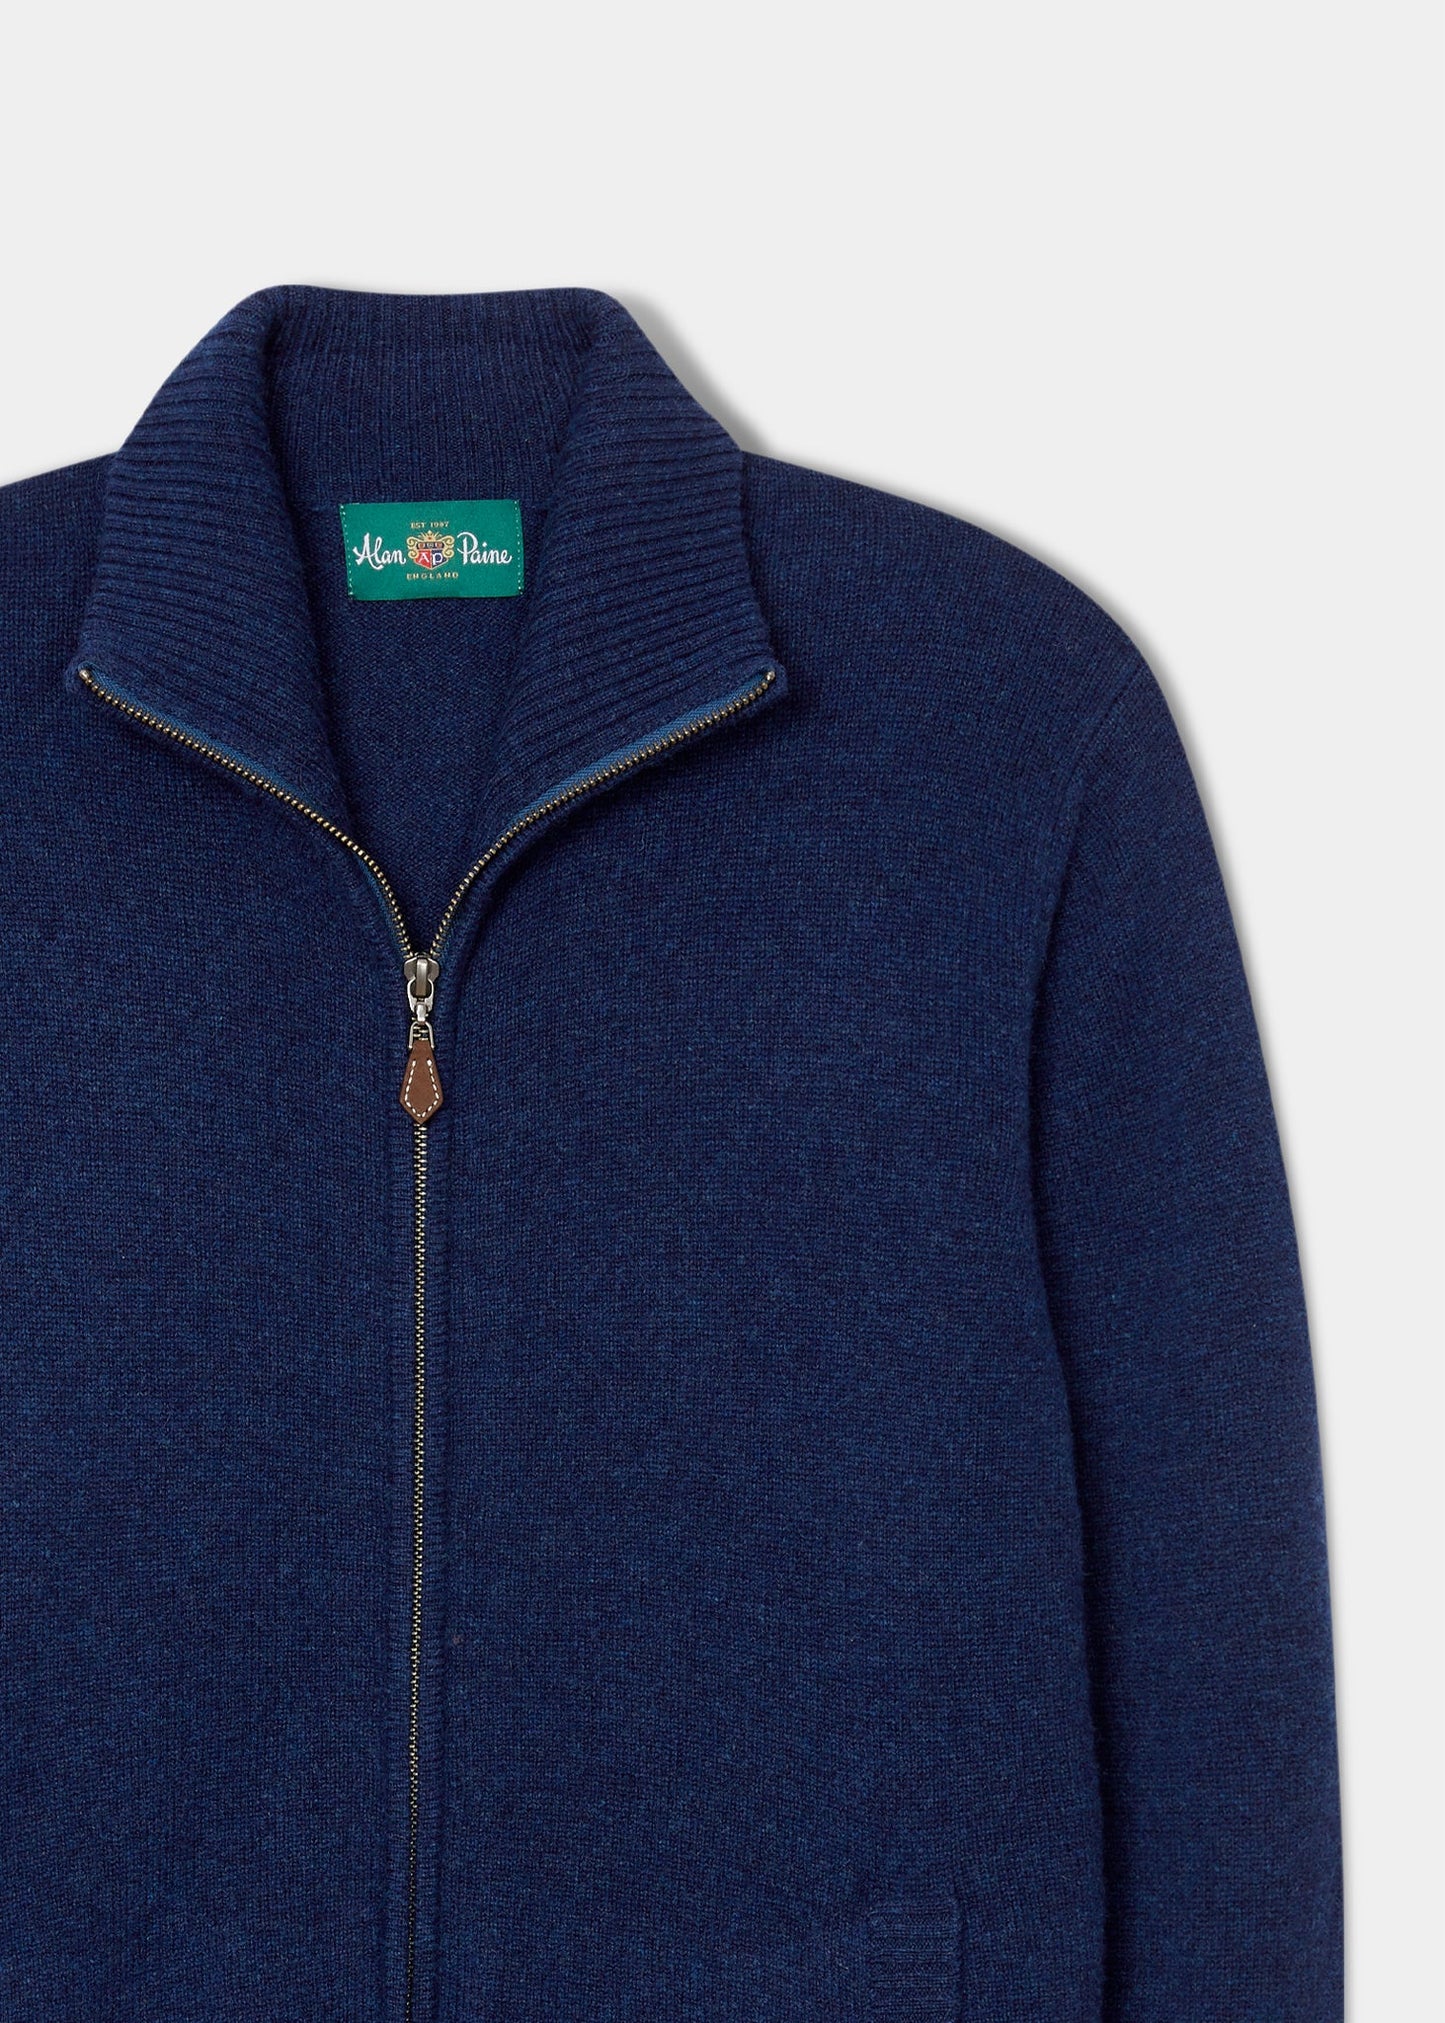 lambswool-half-zip-sweater-indigo